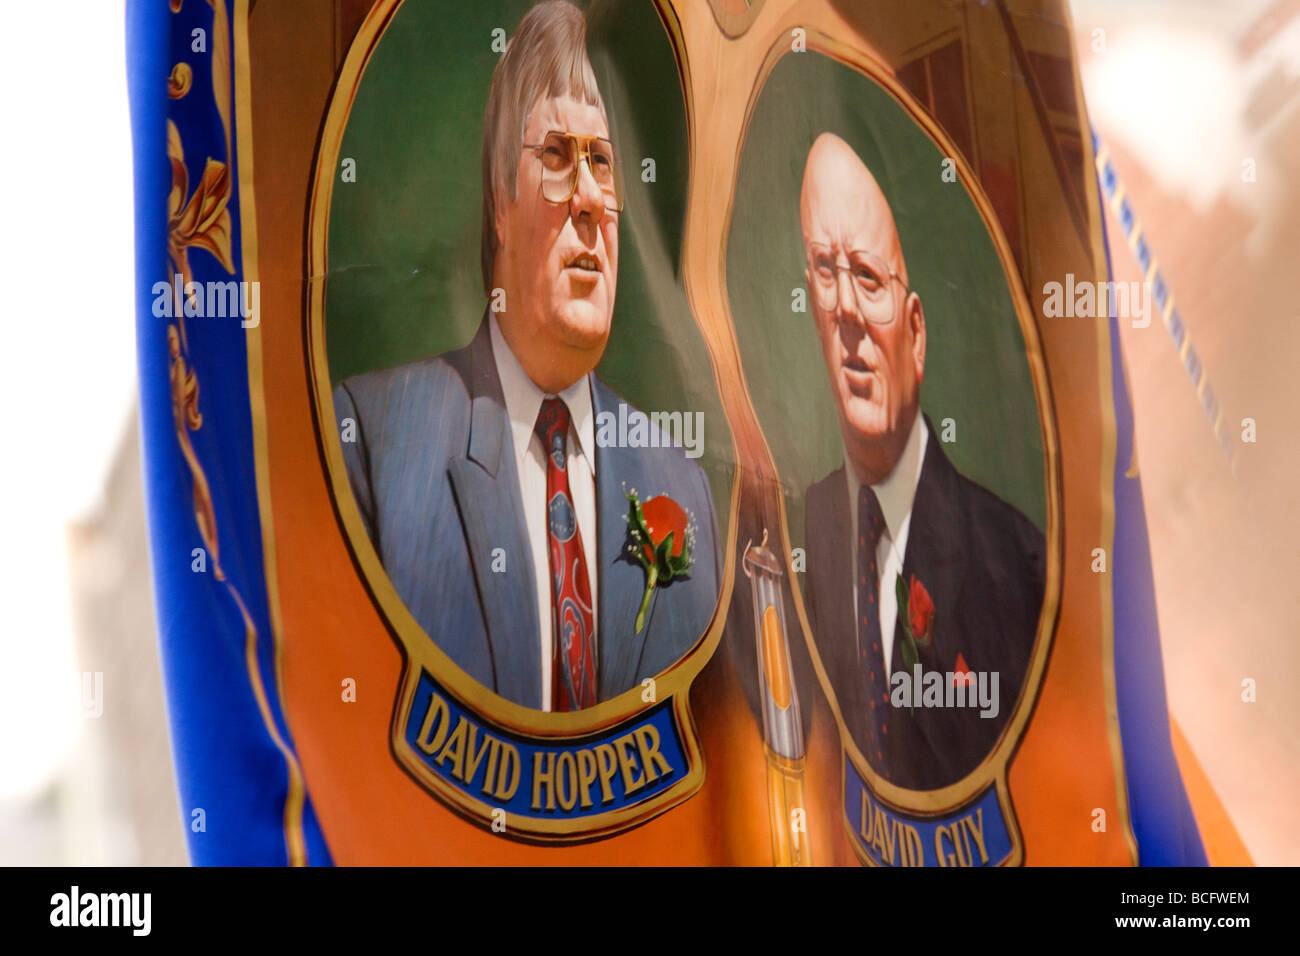 Ein Banner am Durham Miner Gala 2009 zeigt David Hopper (Generalsekretär) und David Guy (Präsident) von der Durham Num. Stockfoto